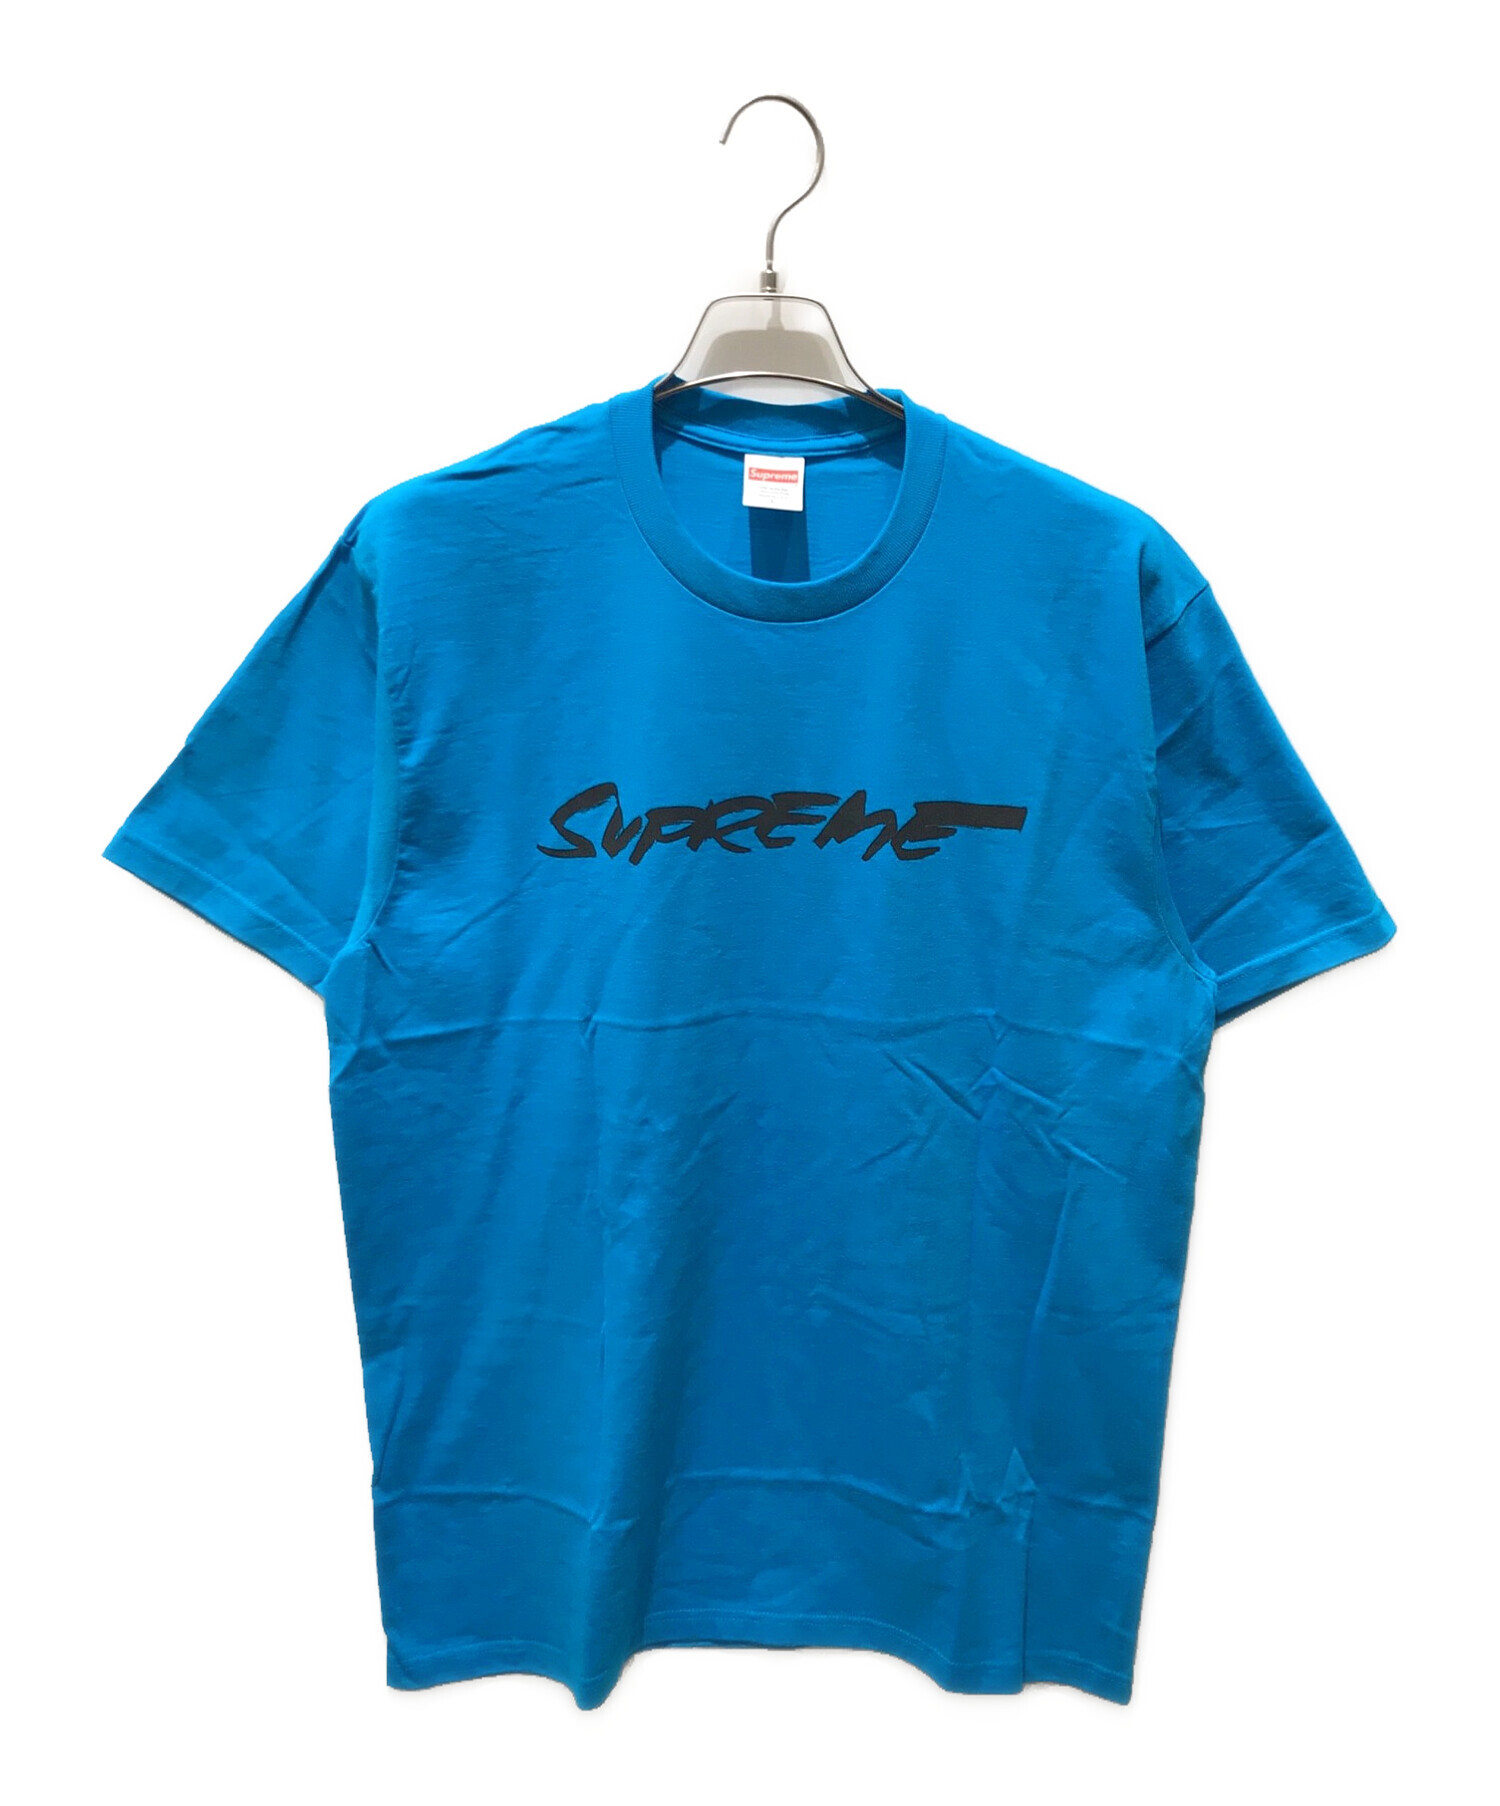 Tシャツ/カットソー(半袖/袖なし)supreme Furuta logo tee L シュプリーム